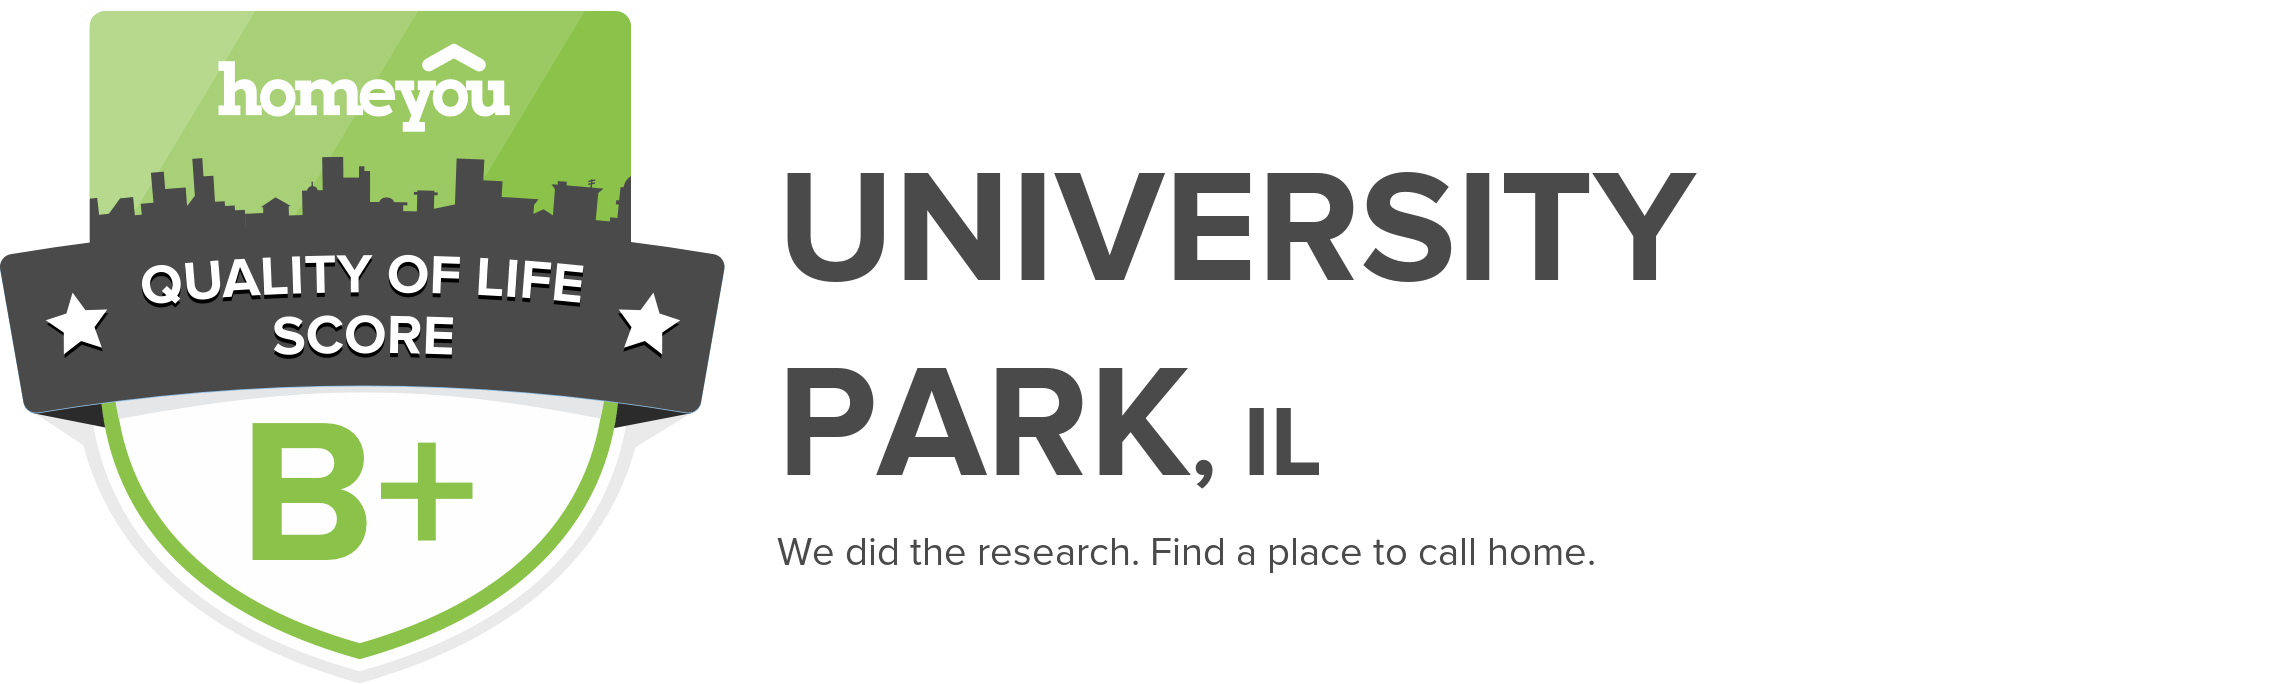 University Park, IL